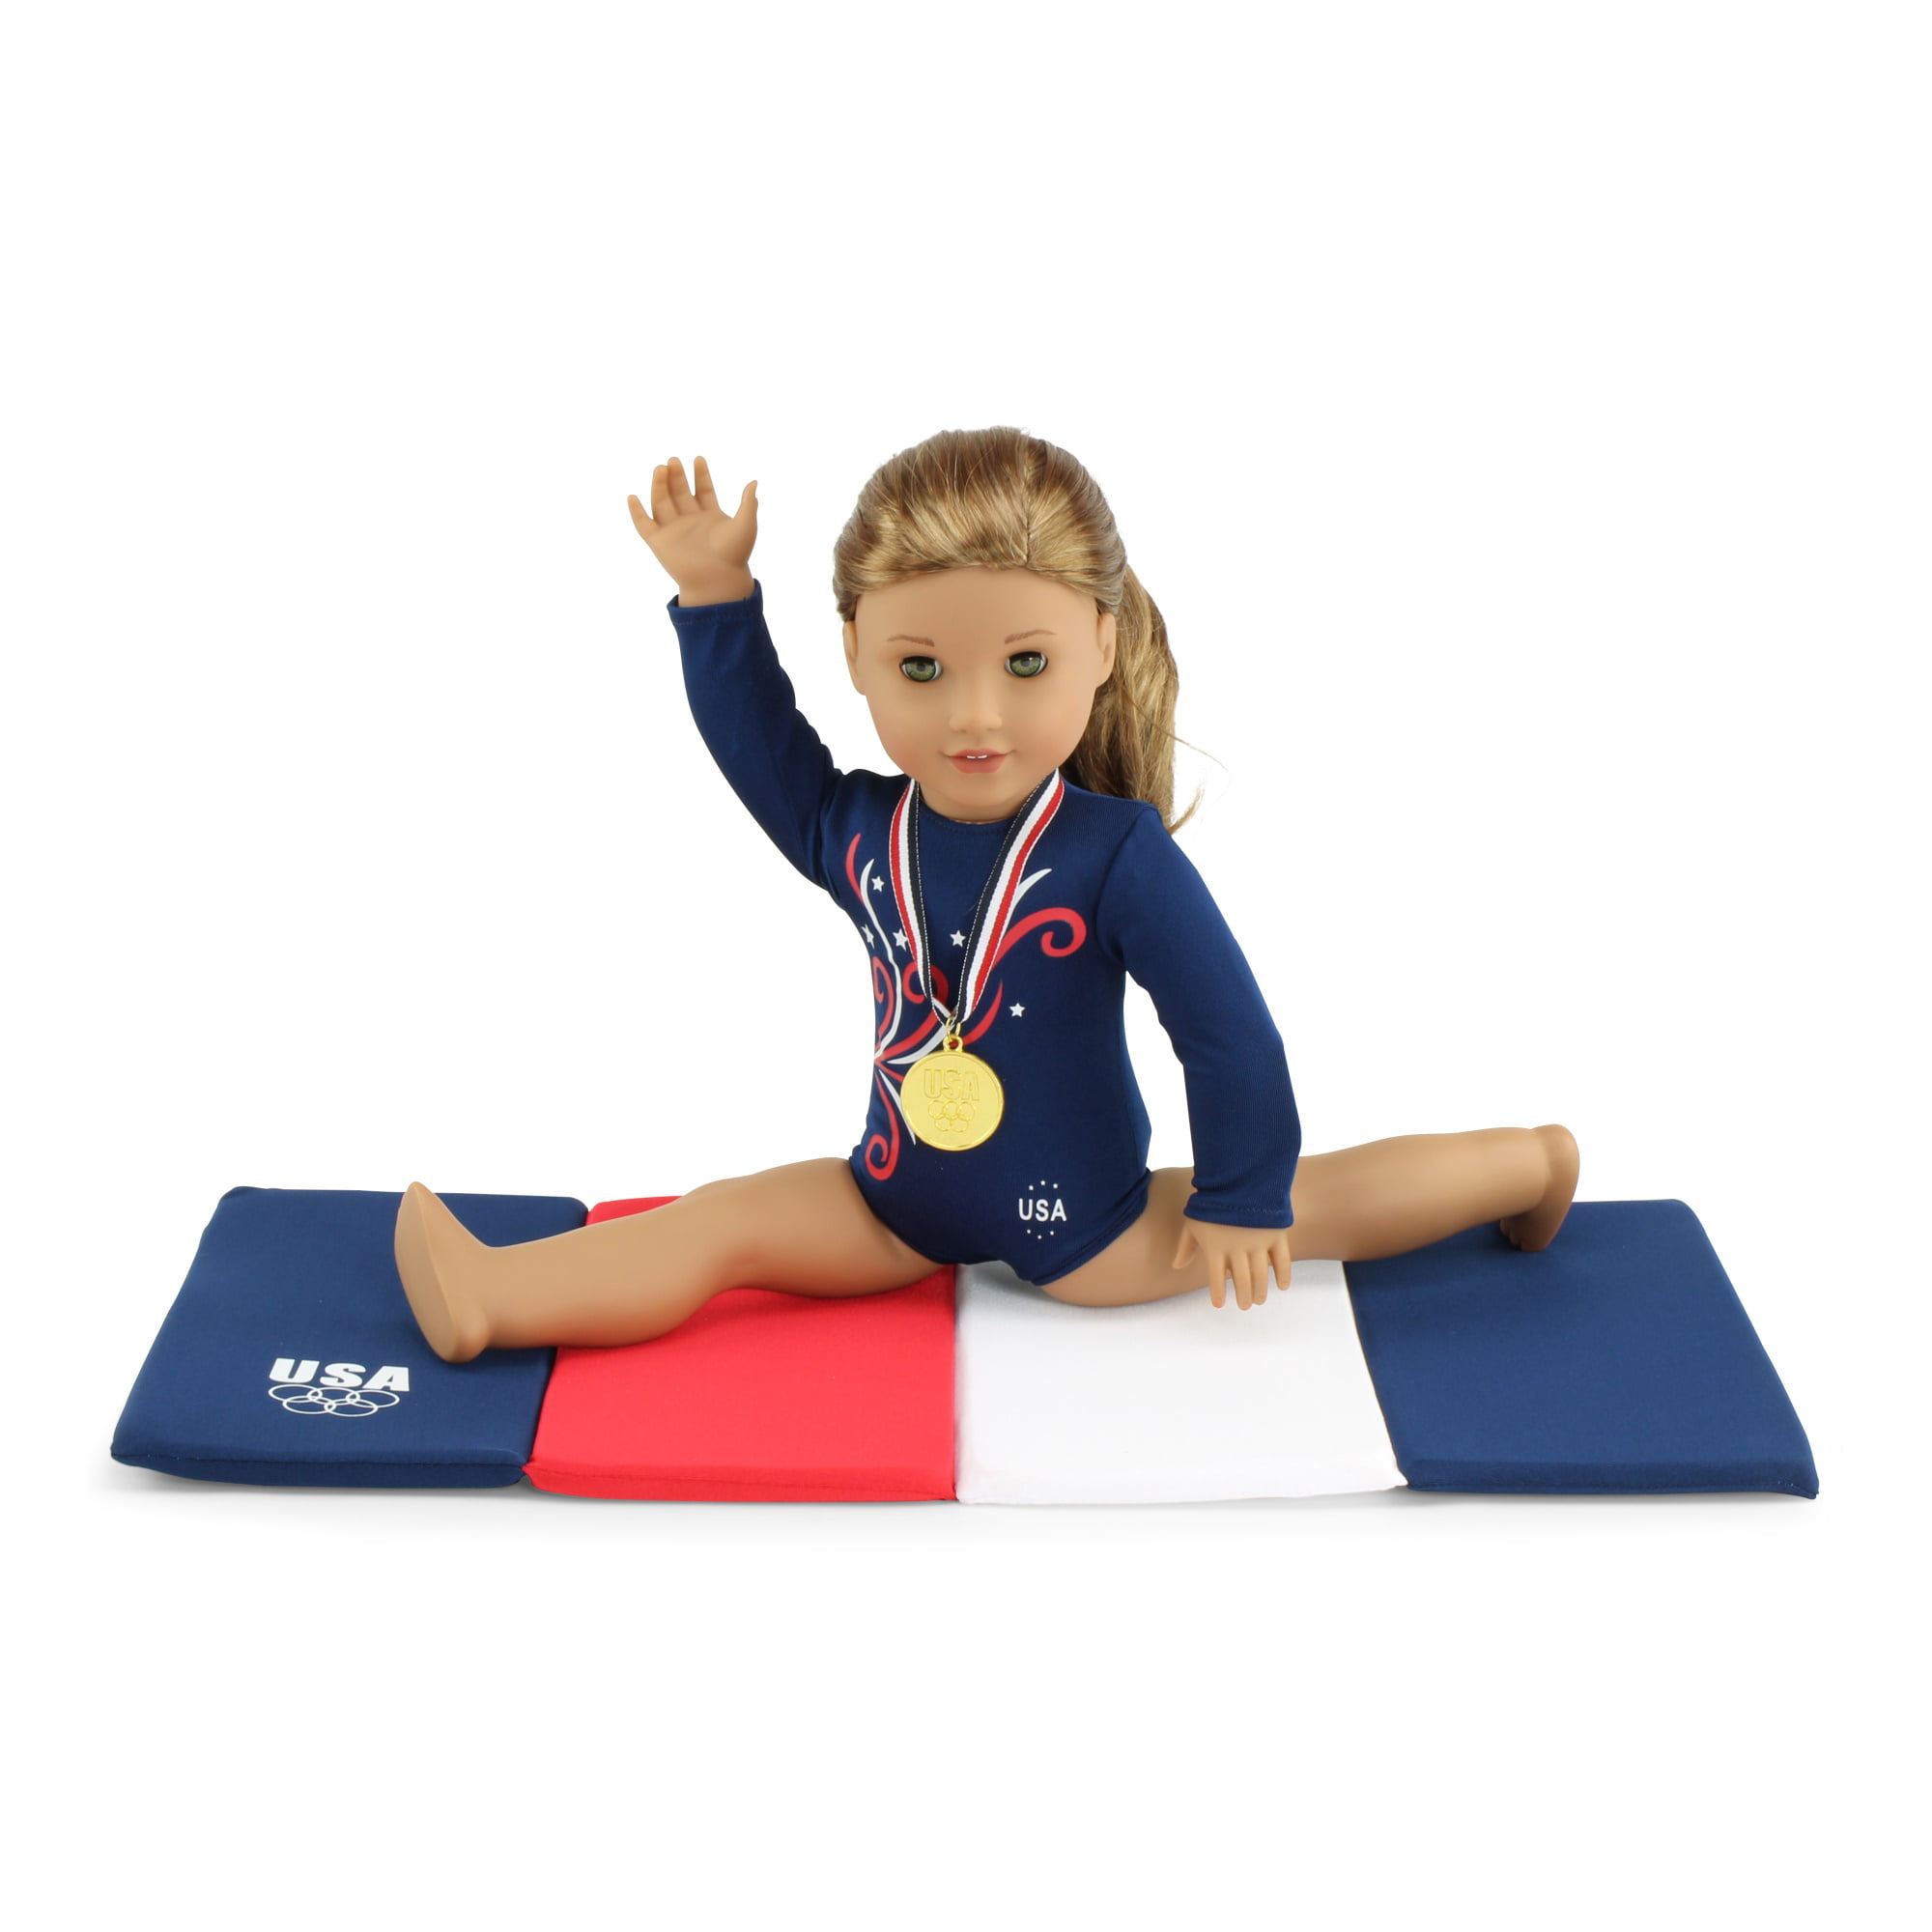 18 inch doll gymnastics equipment